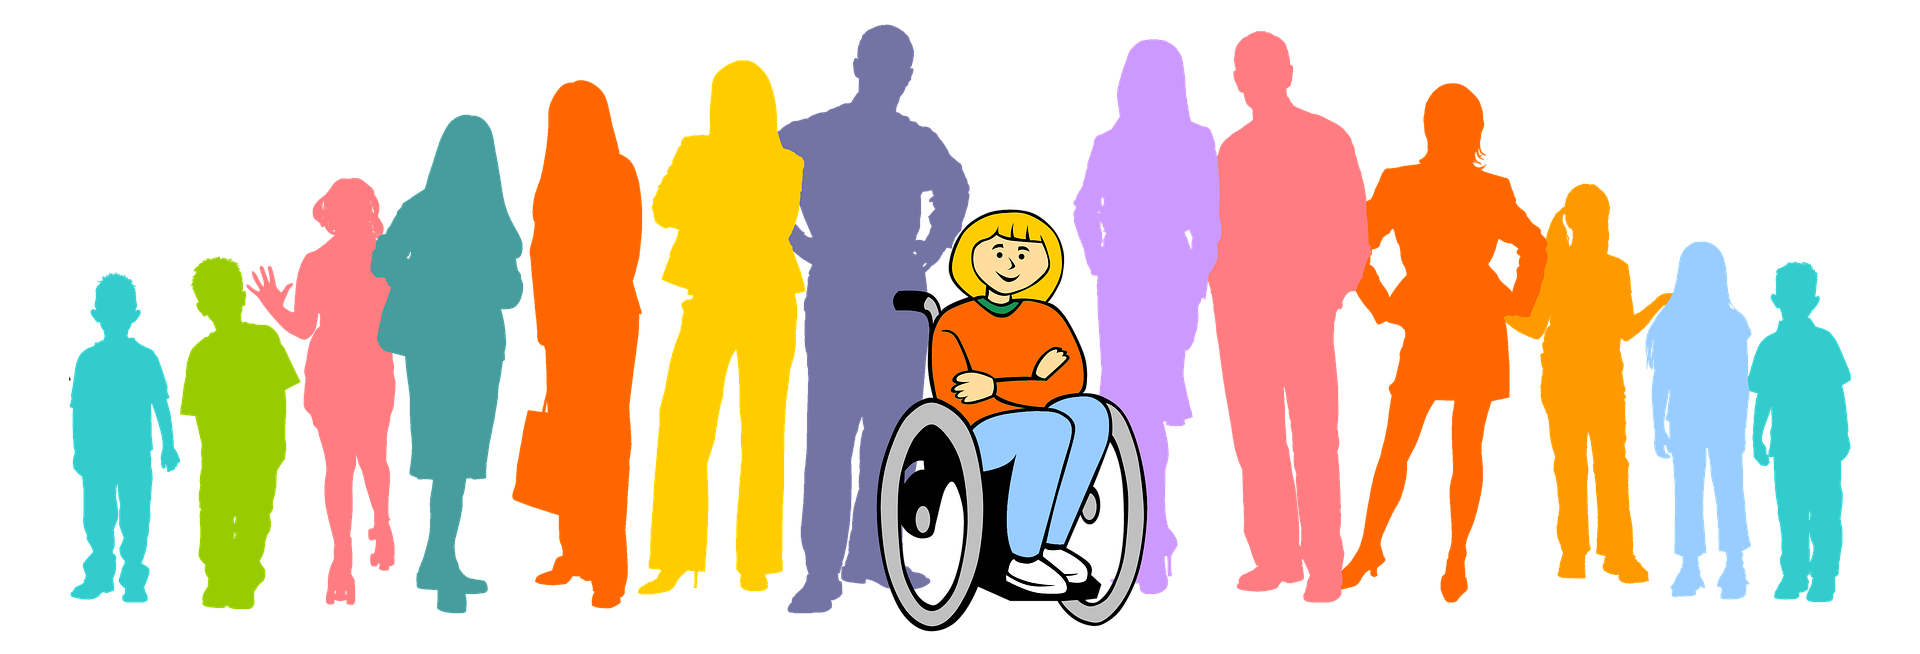 Dessin d'une jeune fille en fauteuil roulant devant des silhouettes colorées